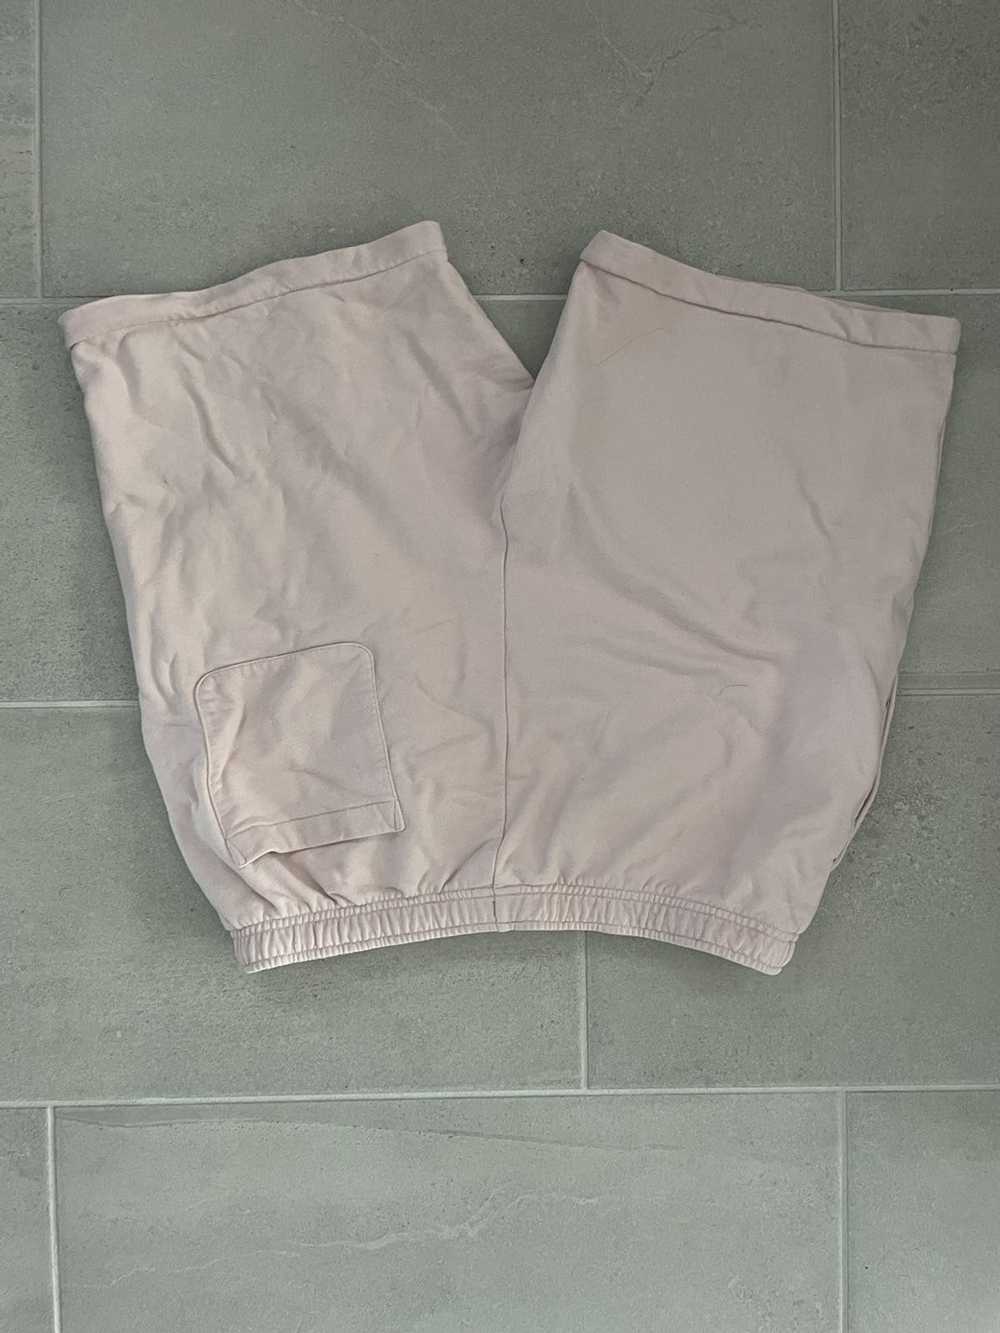 Lacoste × Supreme Supreme x Lacoste Shorts - image 2